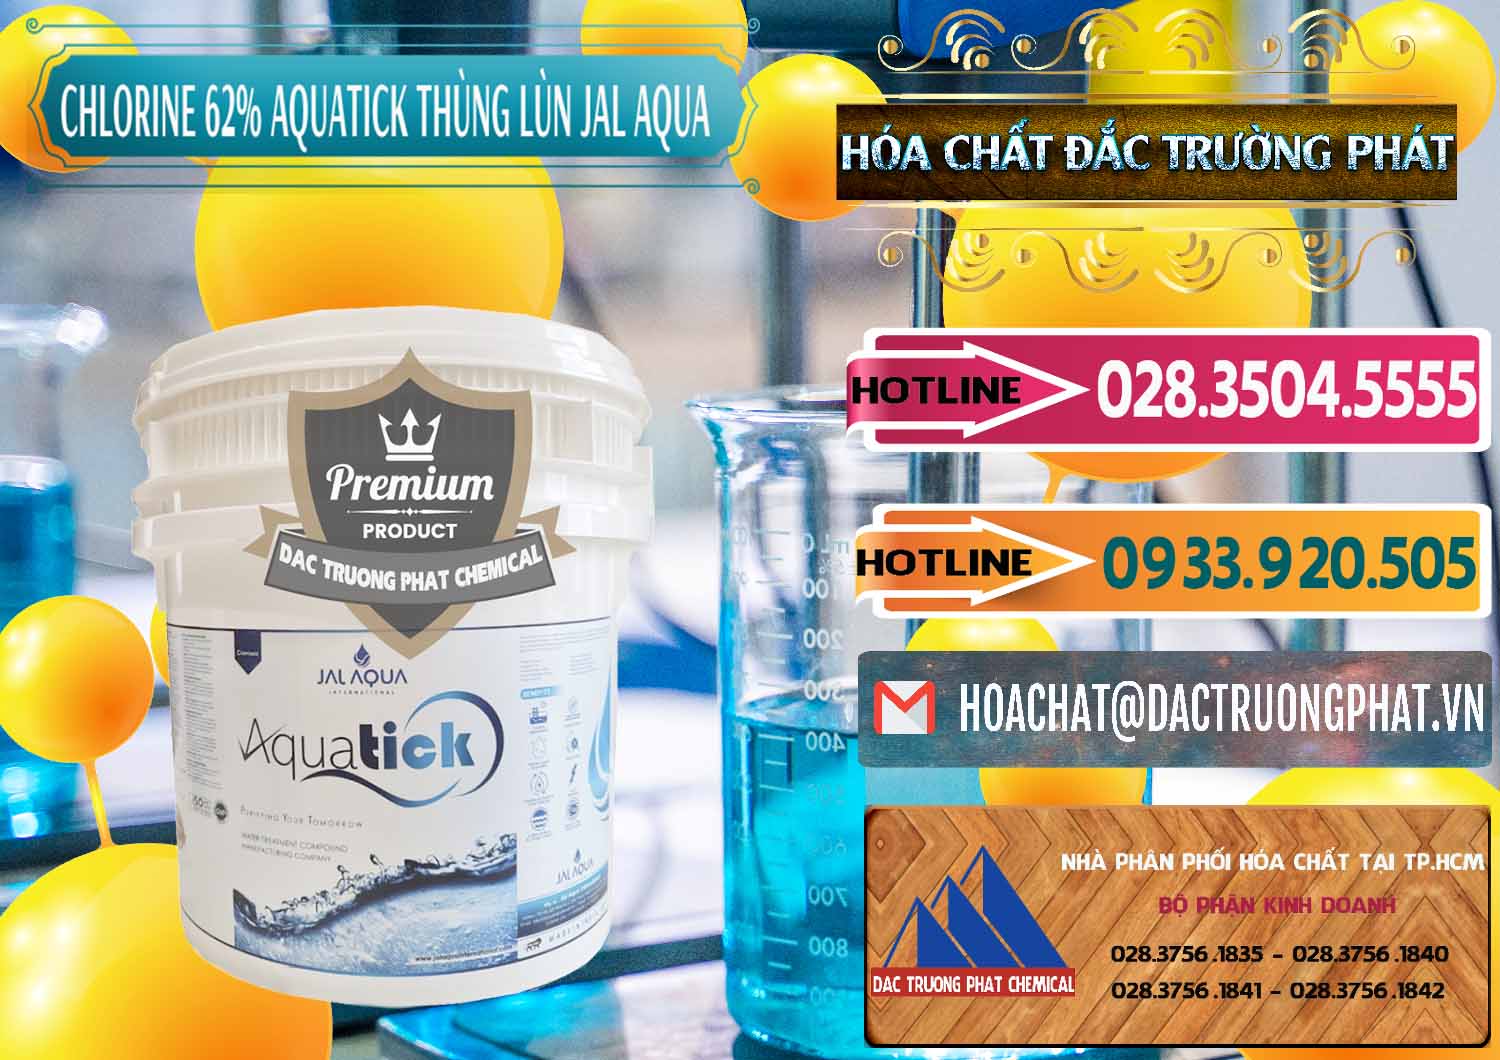 Công ty chuyên phân phối ( bán ) Chlorine – Clorin 62% Aquatick Thùng Lùn Jal Aqua Ấn Độ India - 0238 - Cty nhập khẩu & phân phối hóa chất tại TP.HCM - dactruongphat.vn